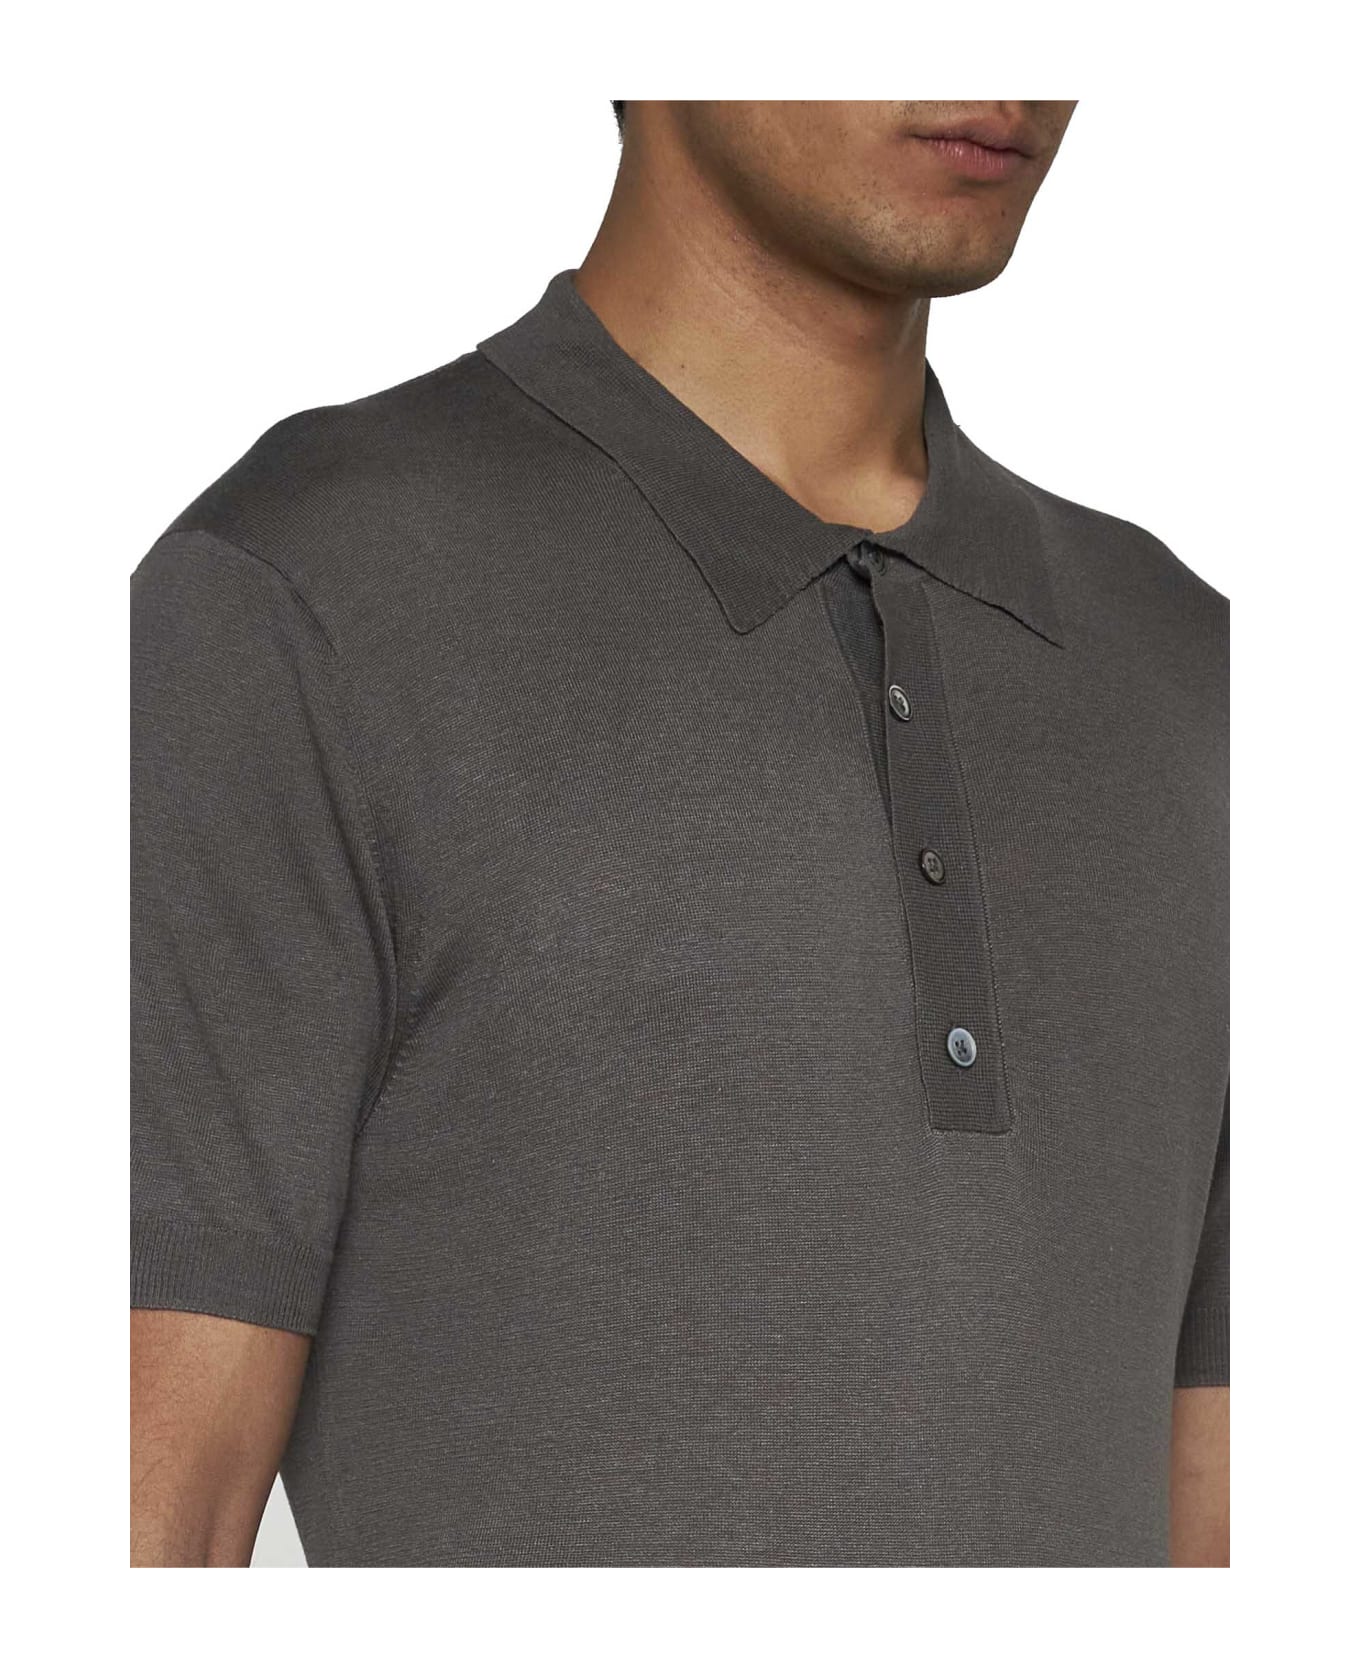 Low Brand Polo Shirt - Bracco